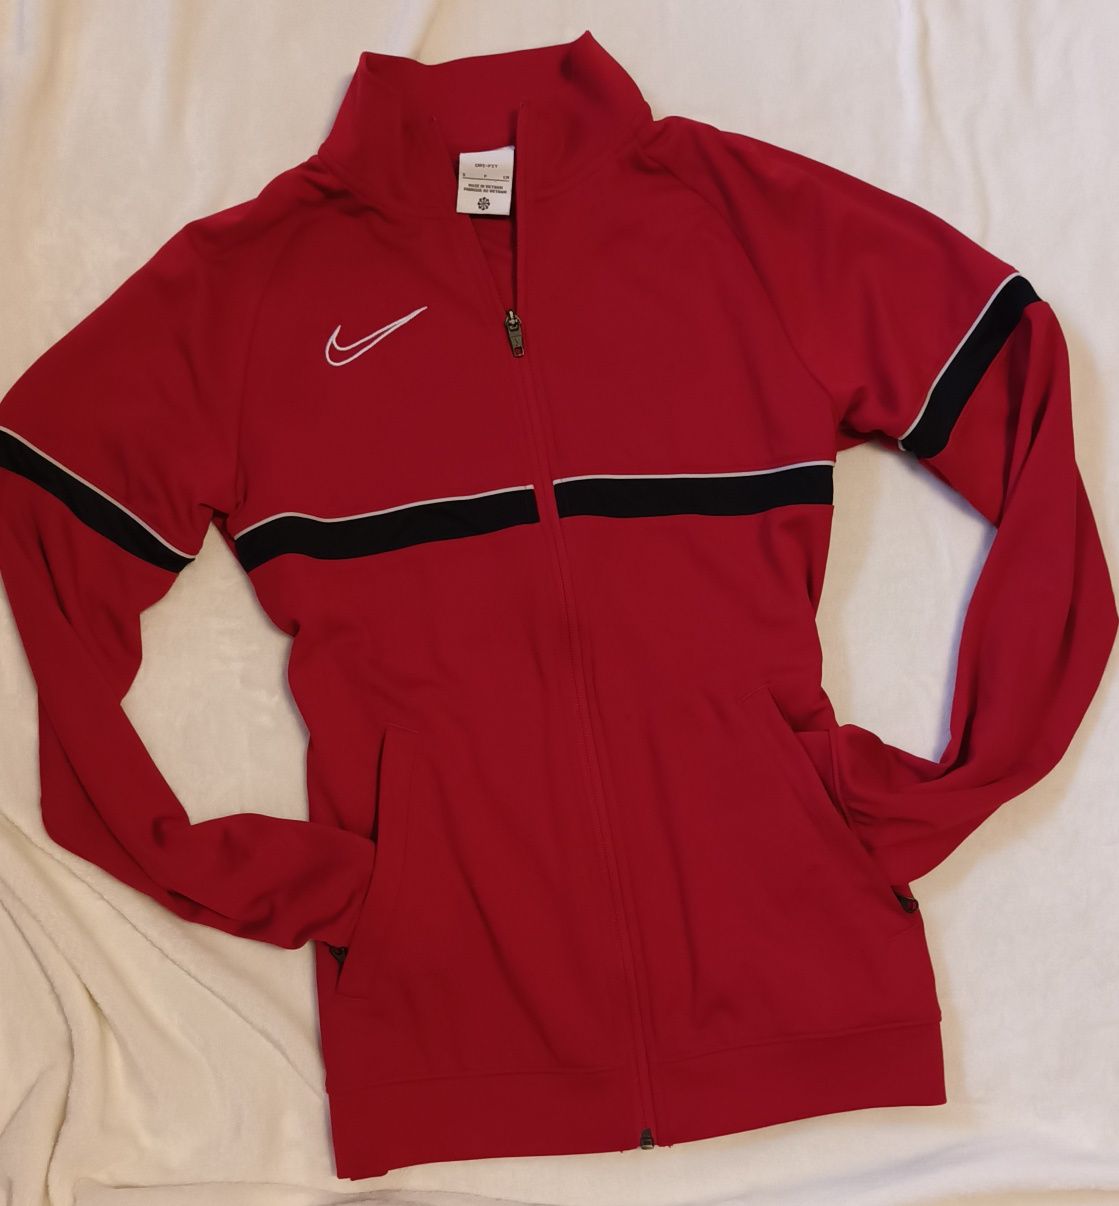 Bluza firmy Nike